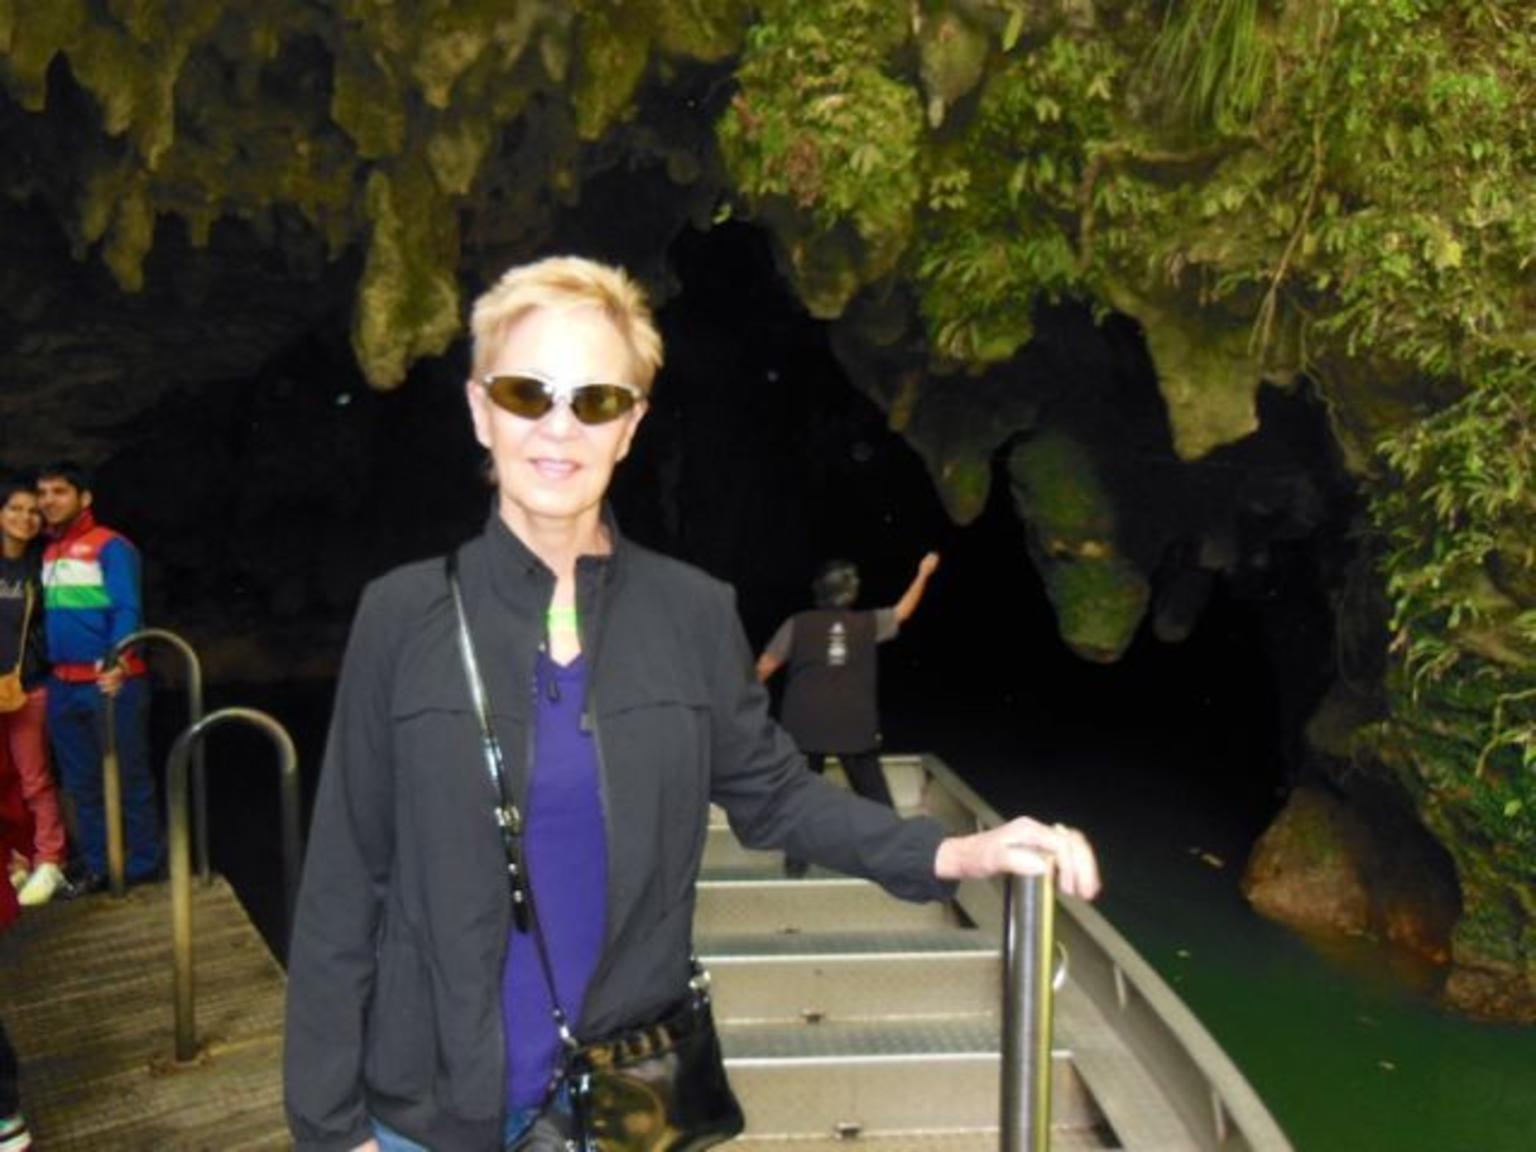 Exiting Waitomo Caves